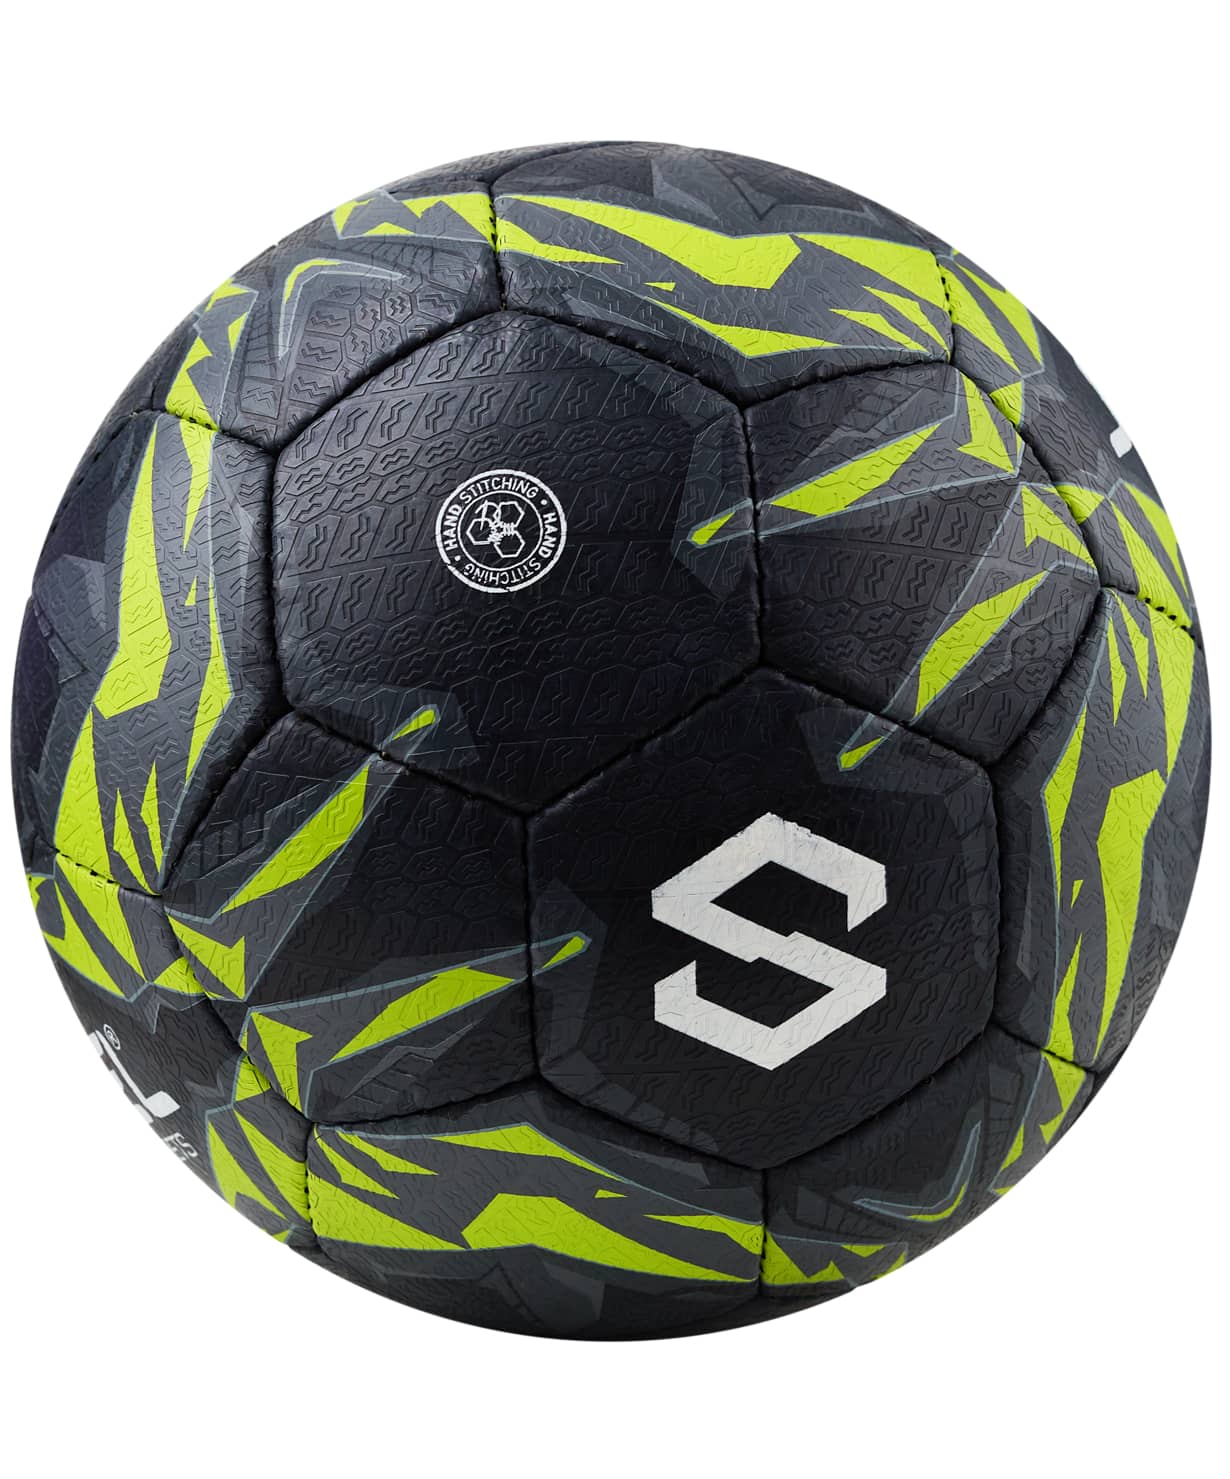 фото Jögel Urban мяч футбольный размер 5 черный Football-54 